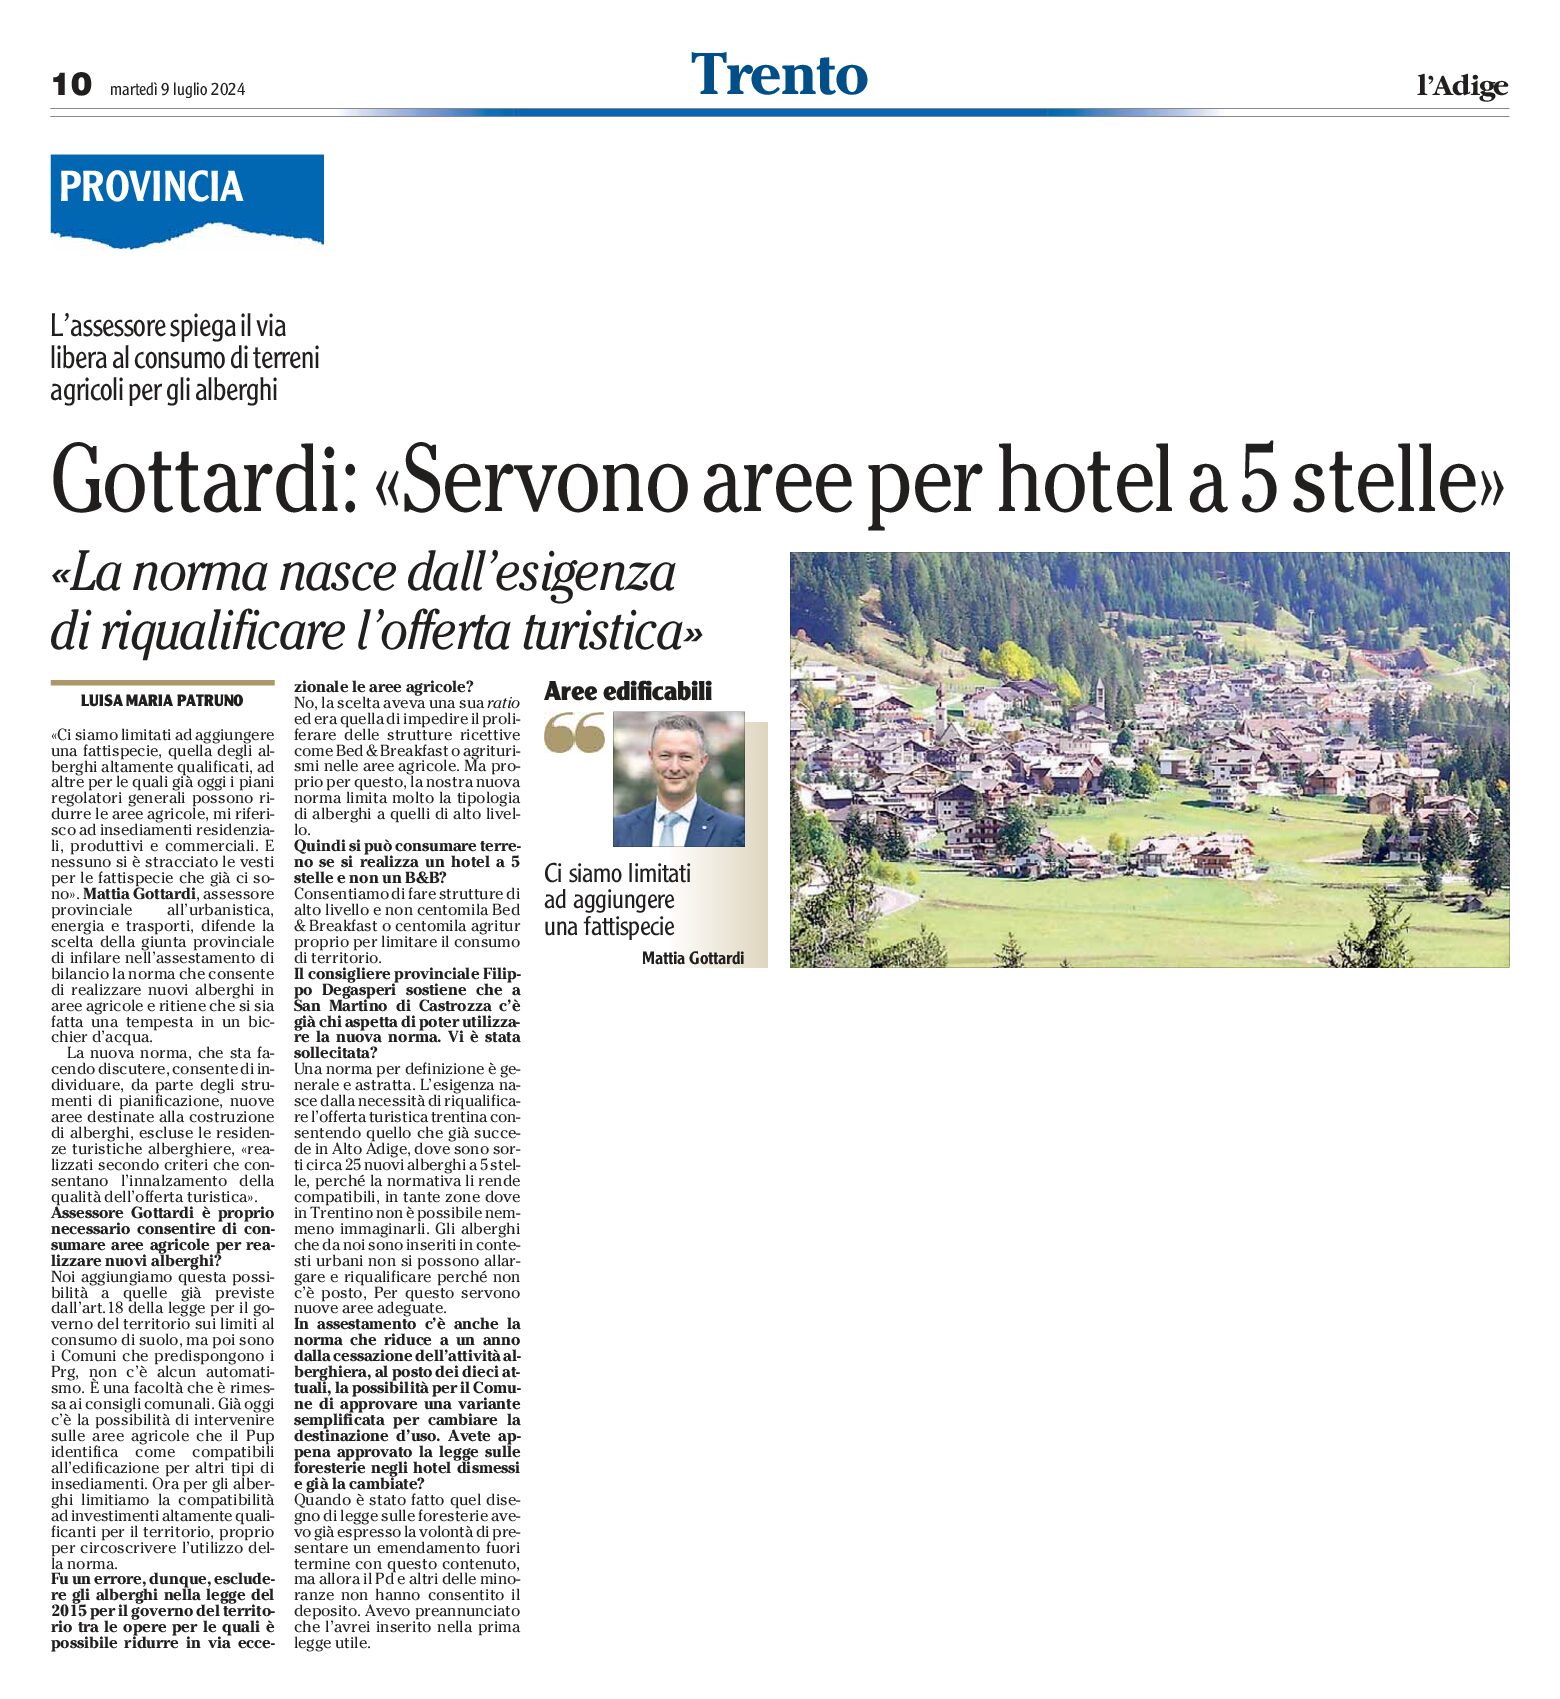 Trento, Provincia: Gottardi “servono aree per hotel a 5 stelle”